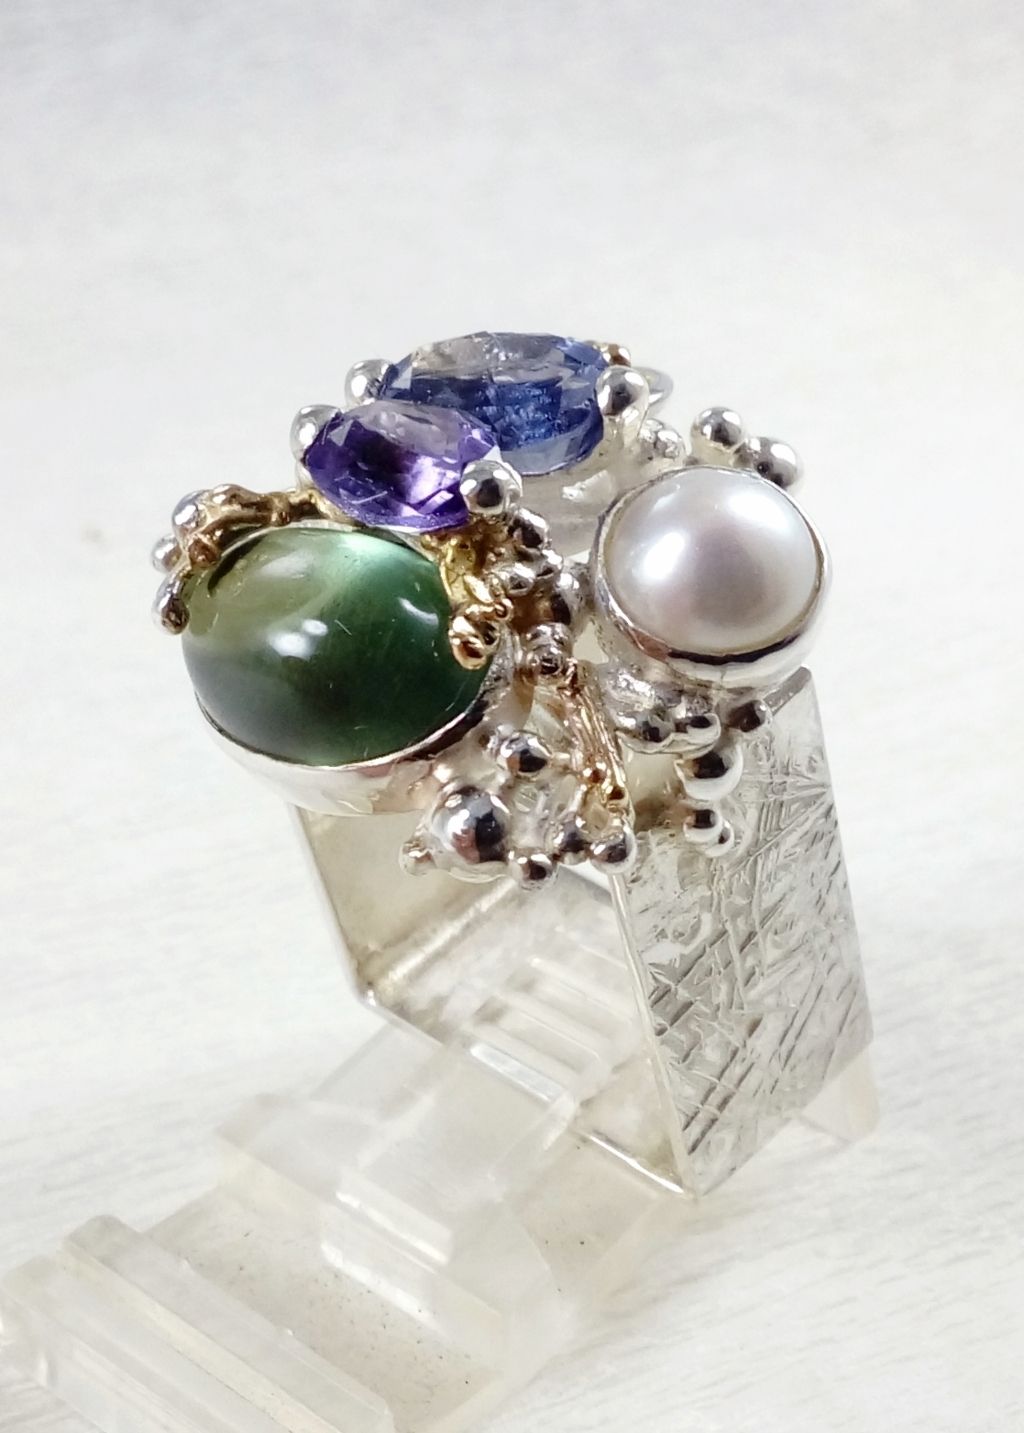 Gregory Pyra Piro čtvercový prsten čís. 4821, vyrobený originální presten, prsten s iolitem a fluoritem, prsten s ametystem a perlou, ručně vyráběné šperky ze stříbra a zlata